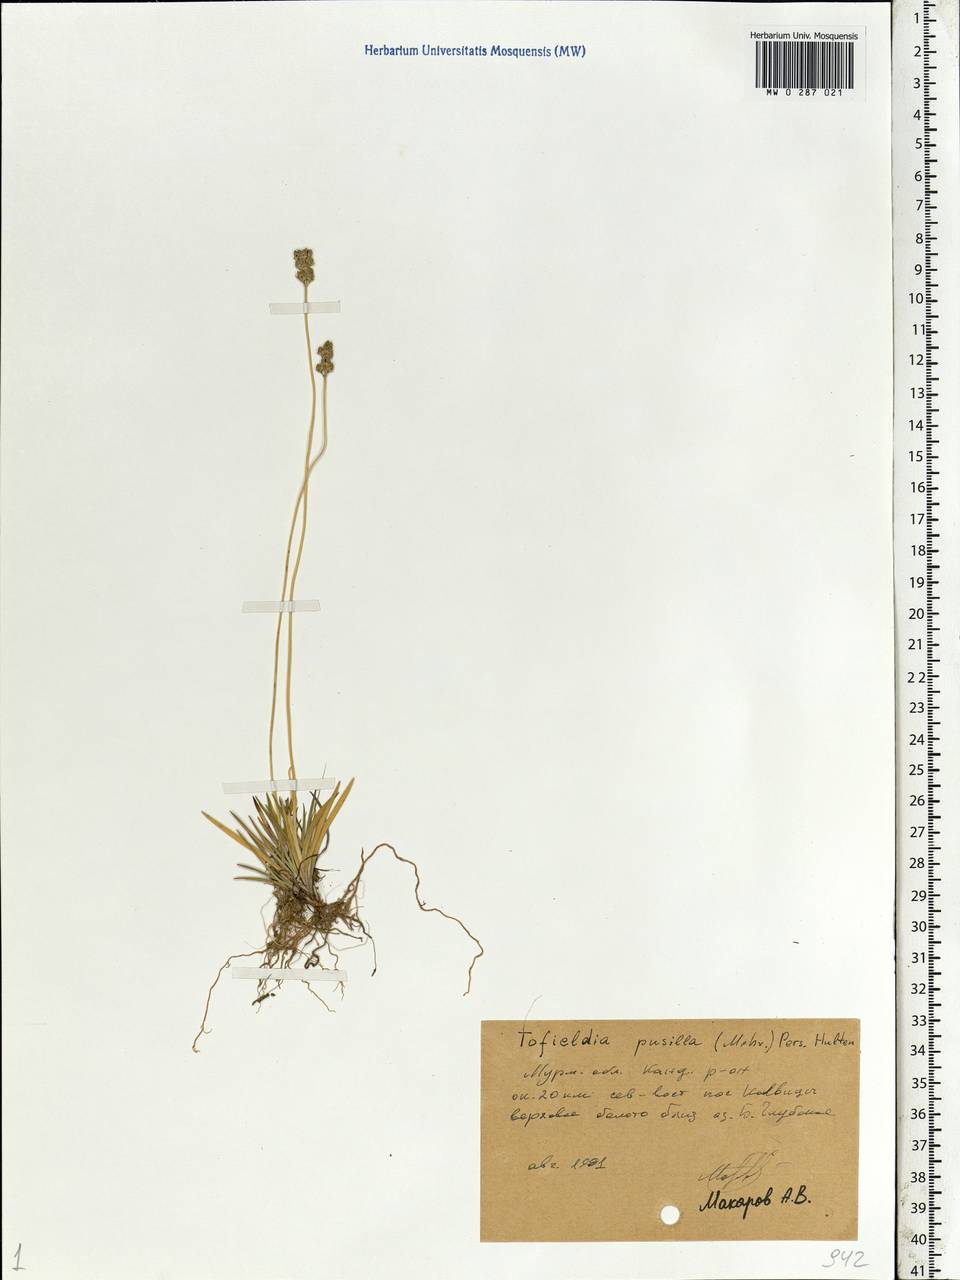 Tofieldia pusilla (Michx.) Pers., Eastern Europe, Northern region (E1) (Russia)